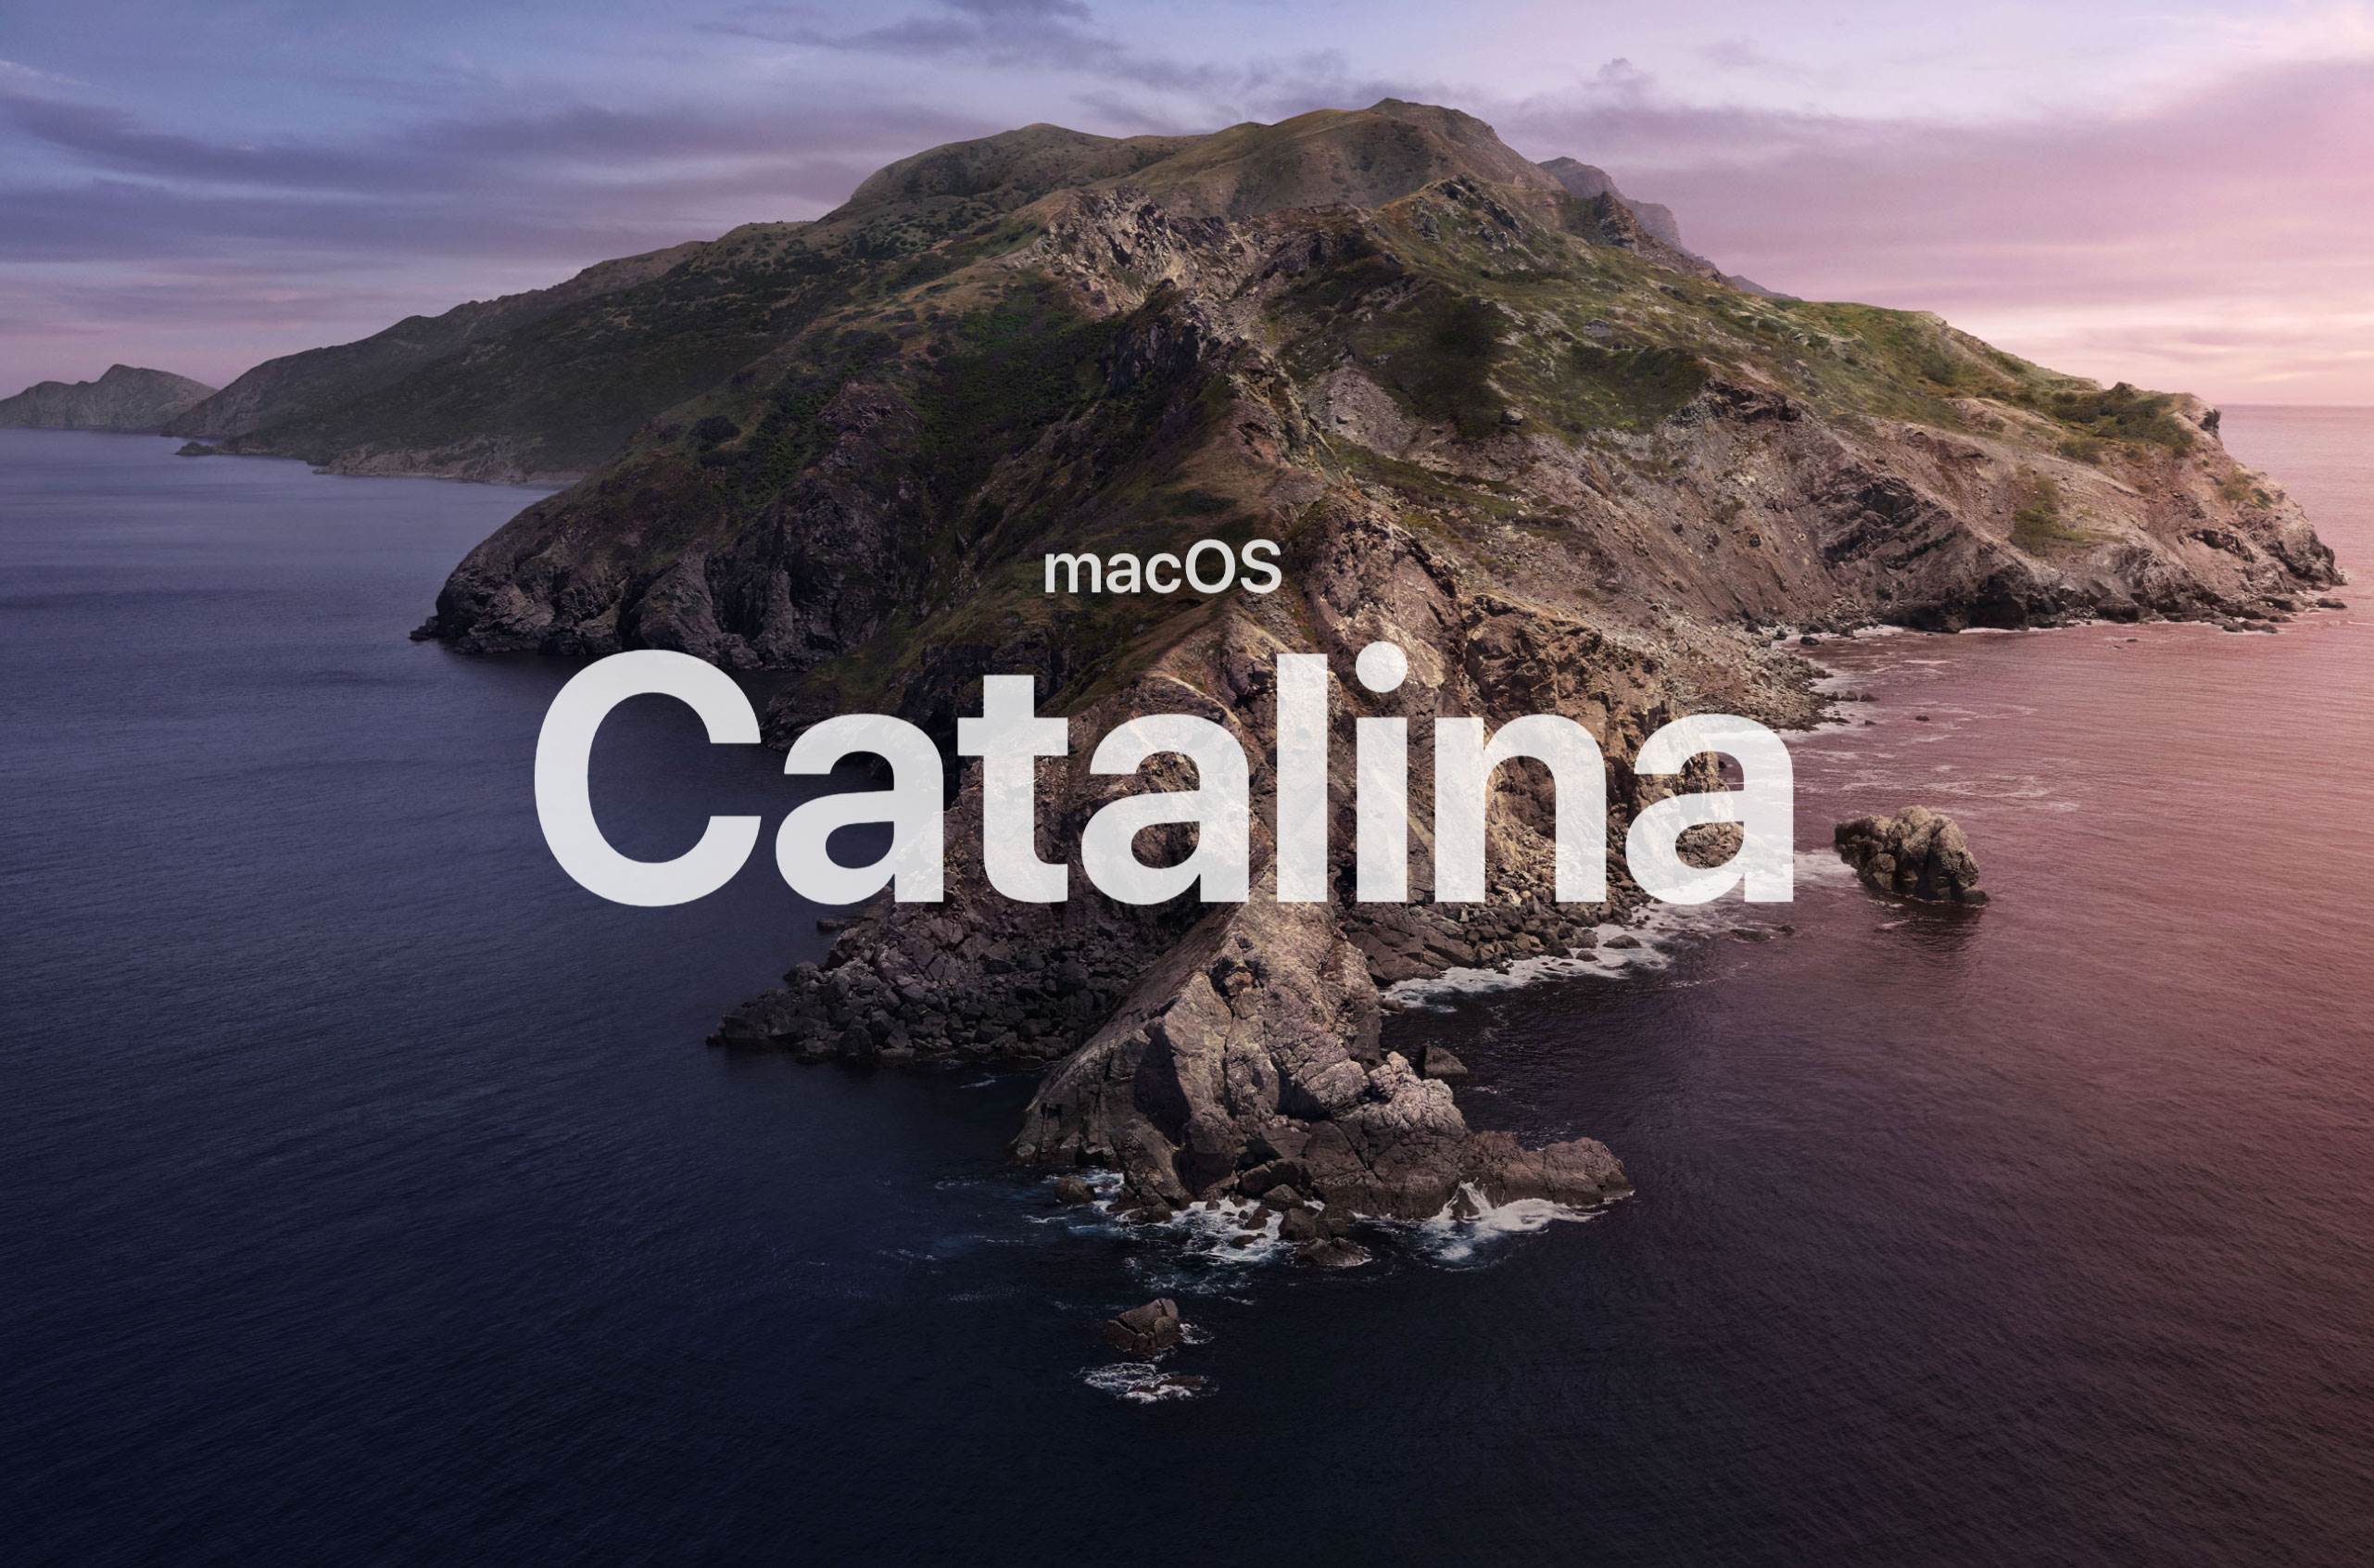 Wydano aktualizację zabezpieczeń dla systemu macOS Catalina 10.15.7 ciekawostki macOS Catalina 10.15.7  Firma Apple oprócz macOS 12.3. wydała dziś także nową, dodatkową aktualizację zabezpieczeń dla systemu macOS Catalina 10.15.7.  Catalina